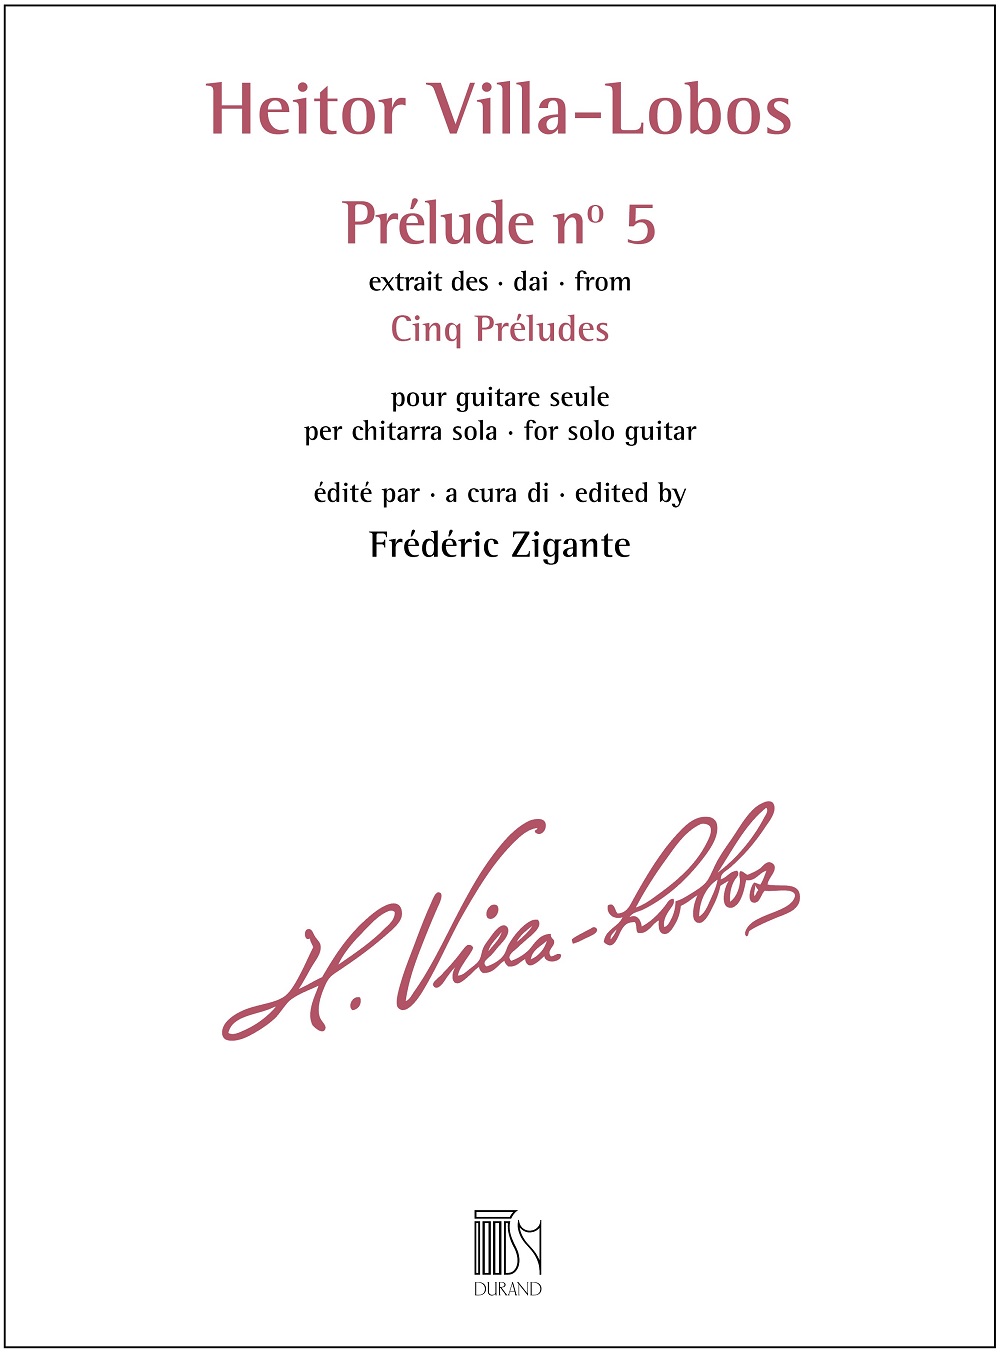 Heitor Villa-Lobos: Prélude n° 5 - extrait des Cinq Préludes: Guitar: